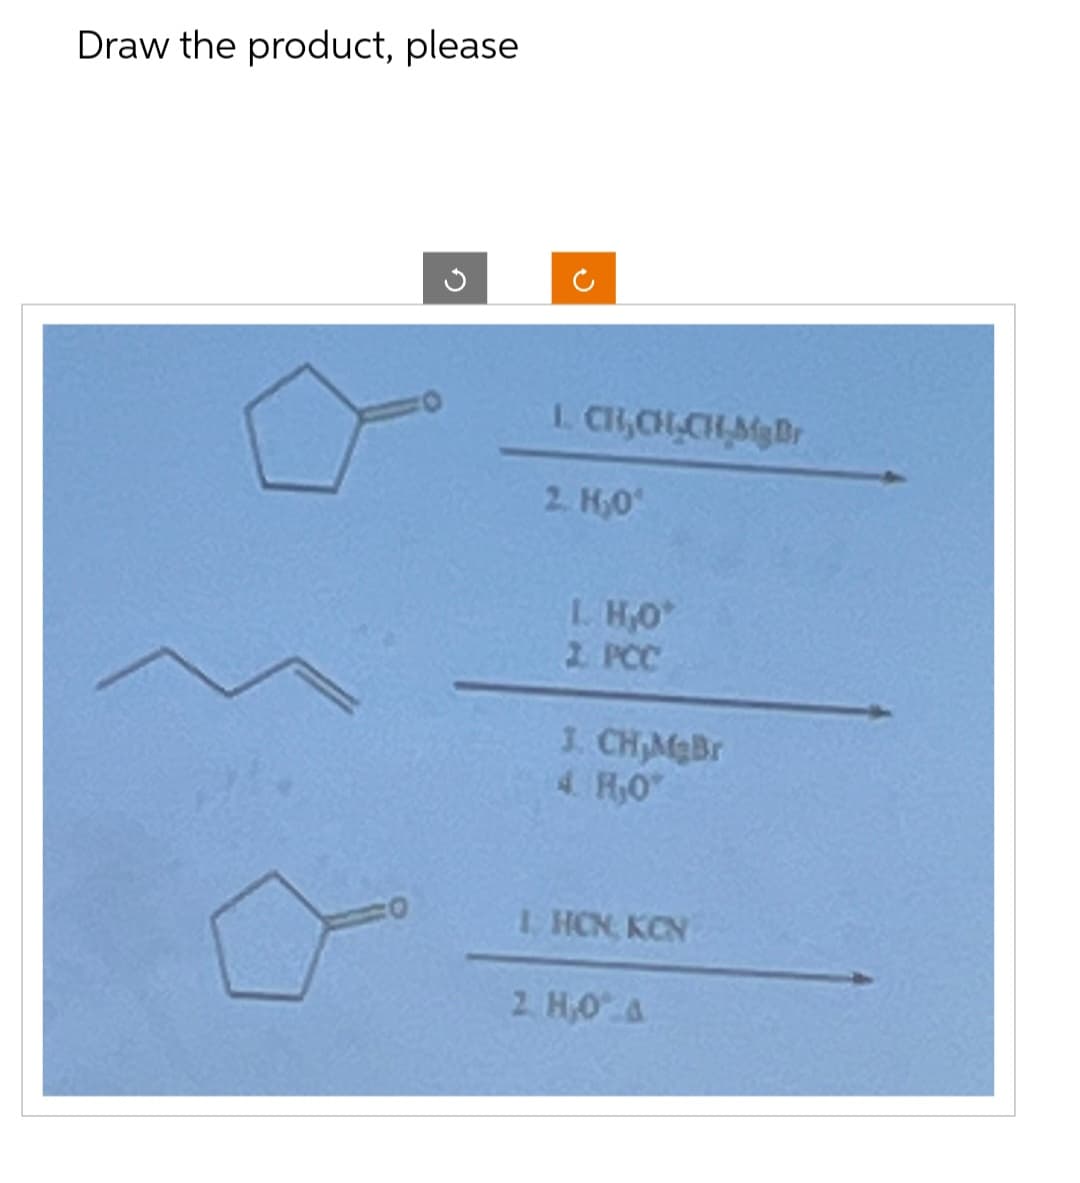 Draw the product, please
ก
D
L. CH,CH,CH,Mg Br
2. H₂O
1. H₂O*
2. PCC
J. CH,MgBr
4. HO
LHCN KEN
2. H,O A